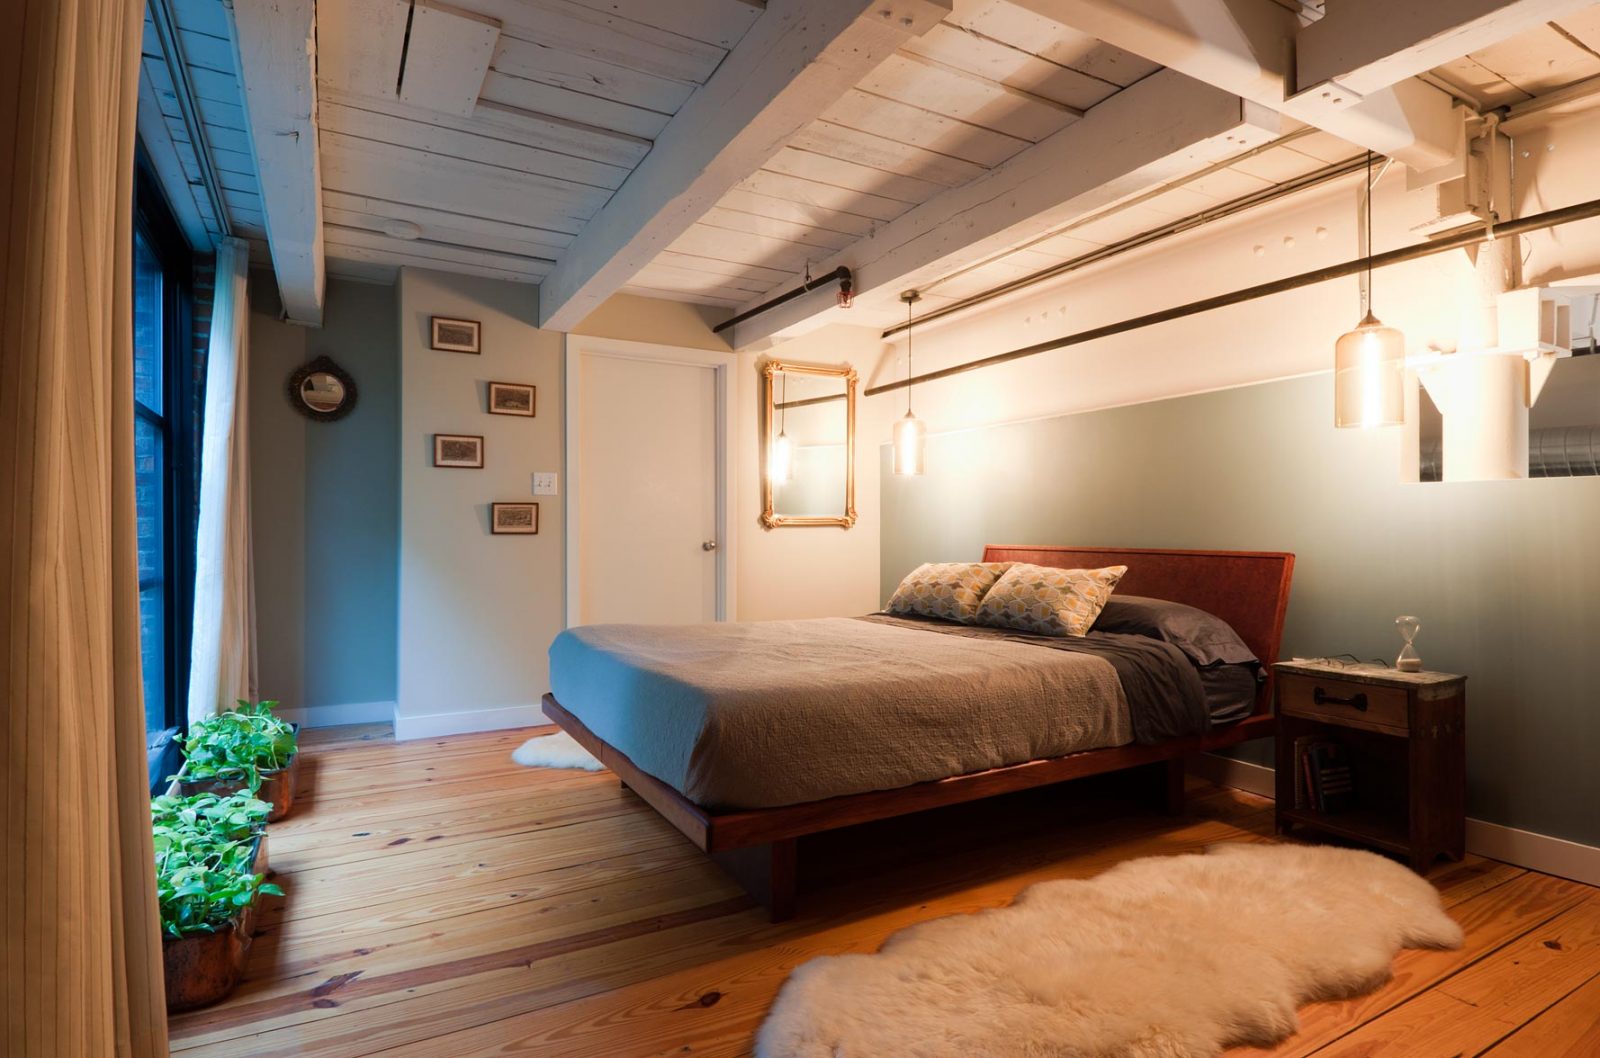 Dormitorio con techos de madera